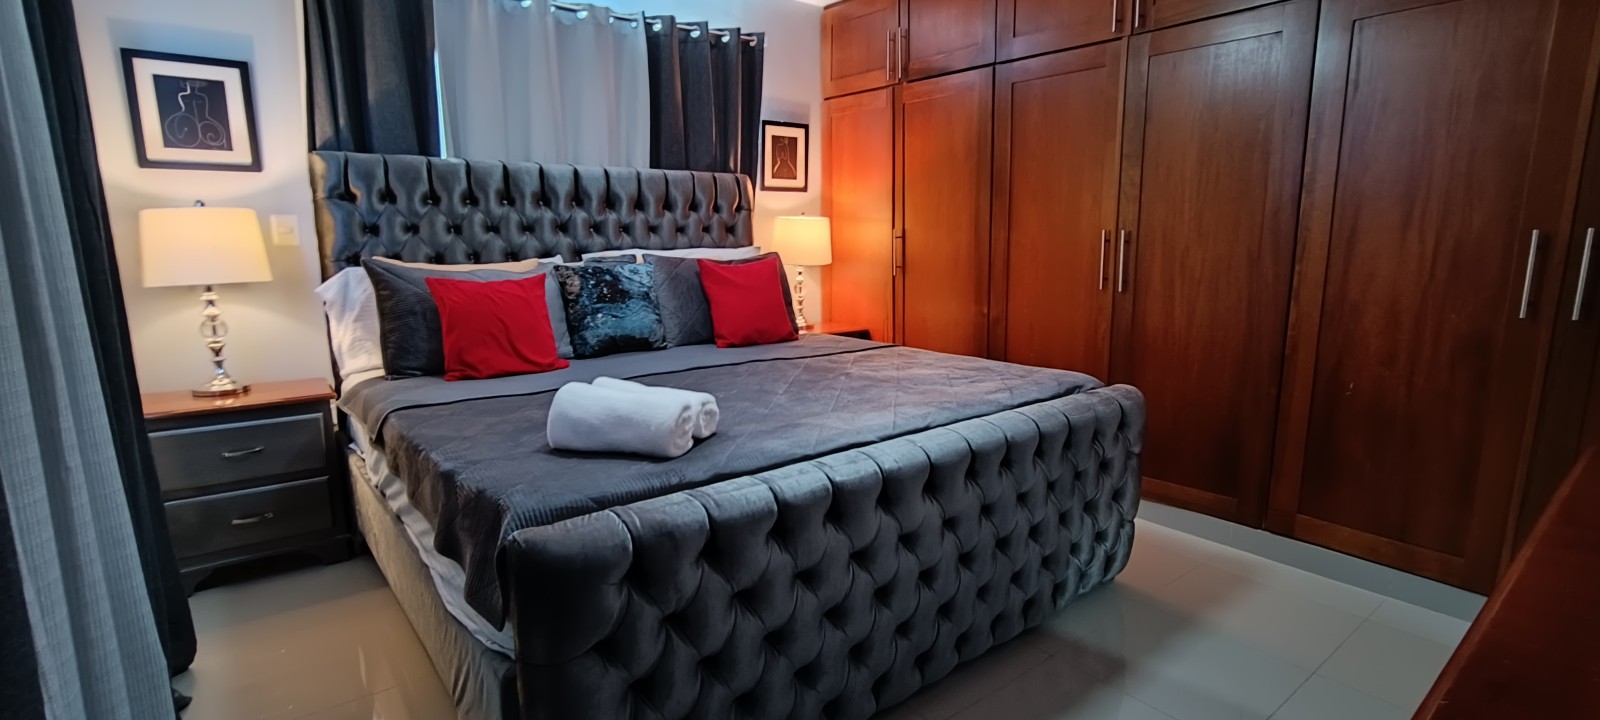 apartamentos - Airbnb AMUEBLADO en villa Olga seguro y confort 0